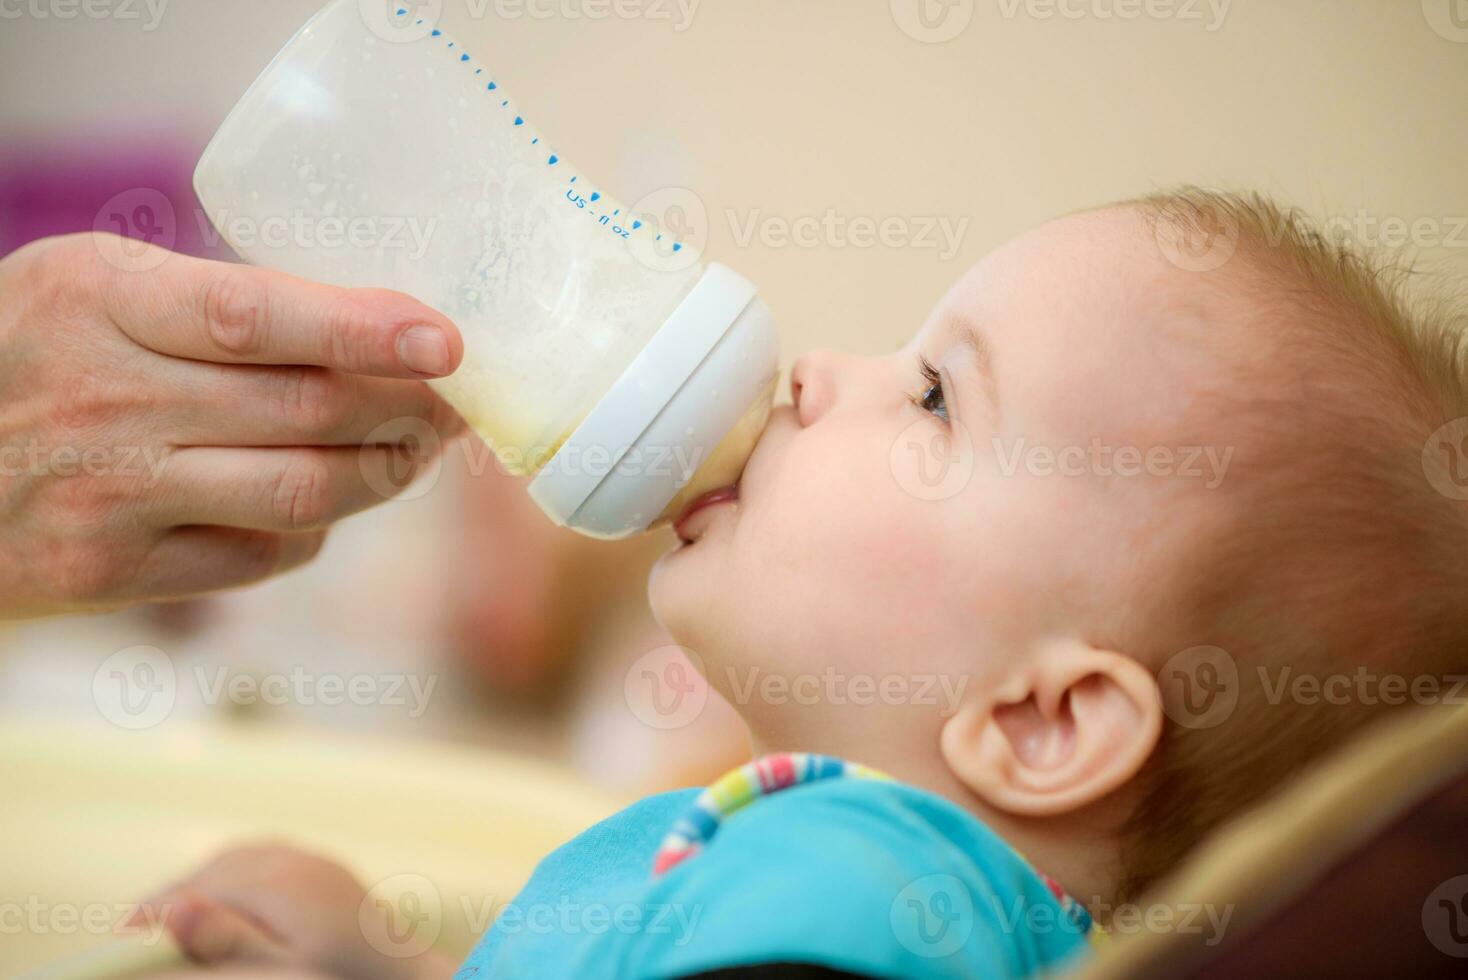 mãe feeds bebê a partir de uma garrafa do leite foto